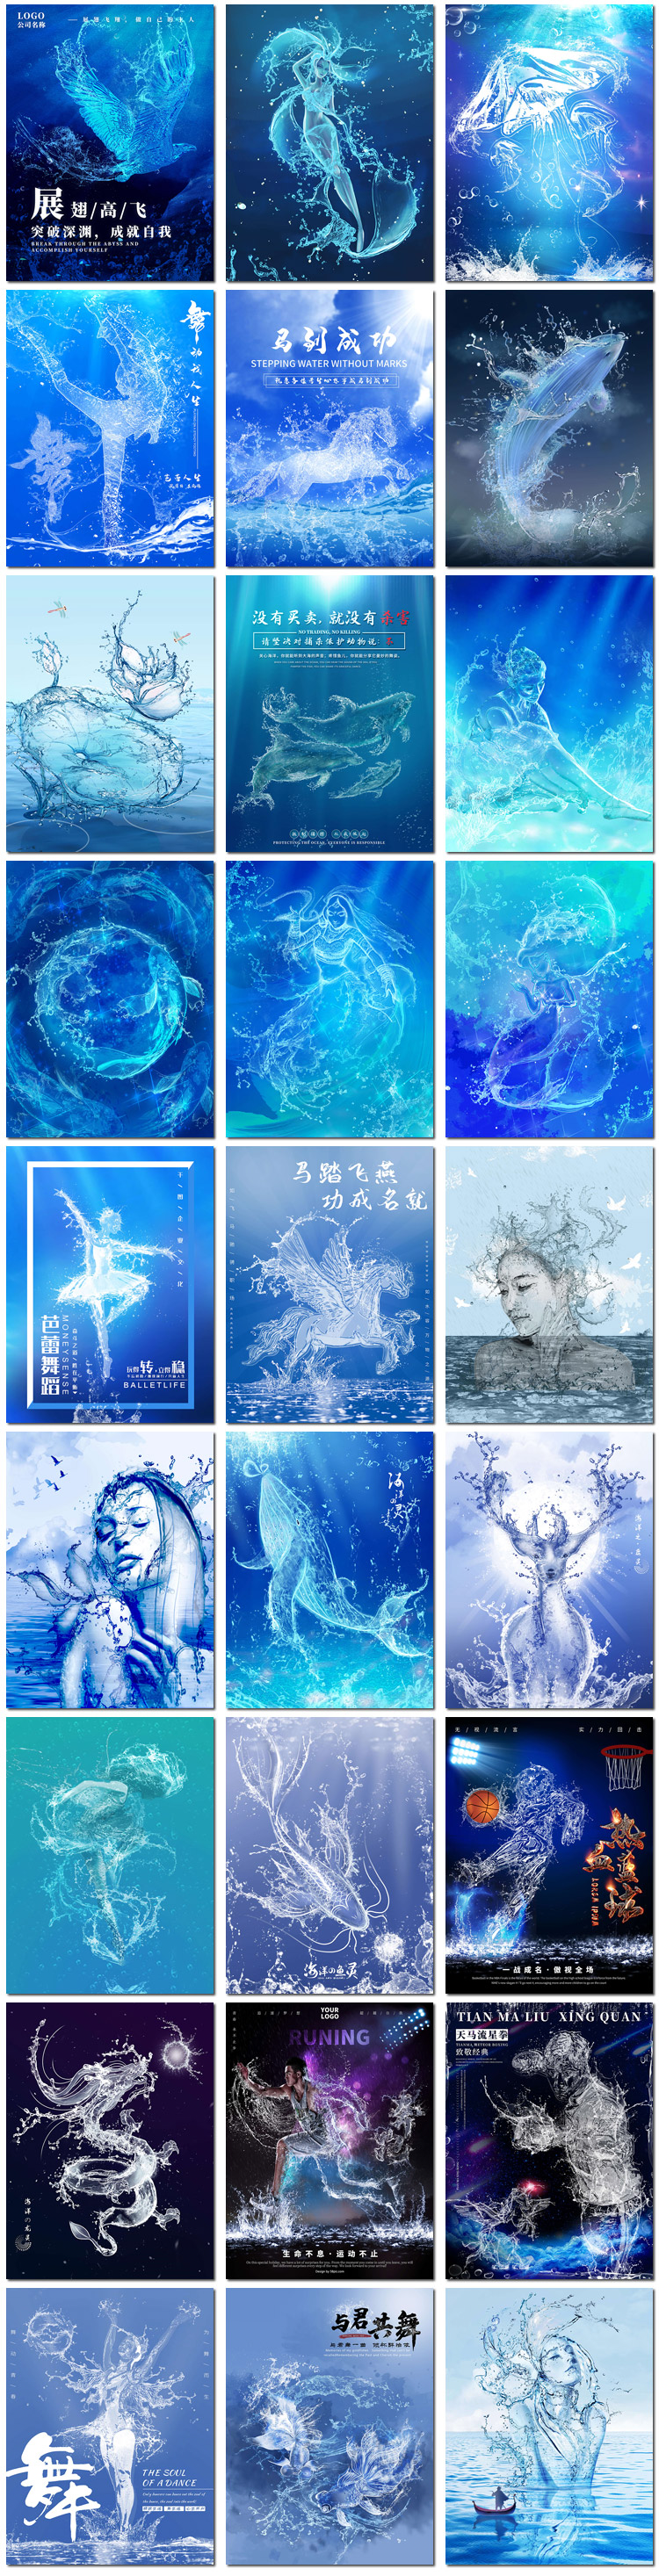 海洋之灵水花液体灵动飘逸水精灵冲击插图画psd海报模板设计素材